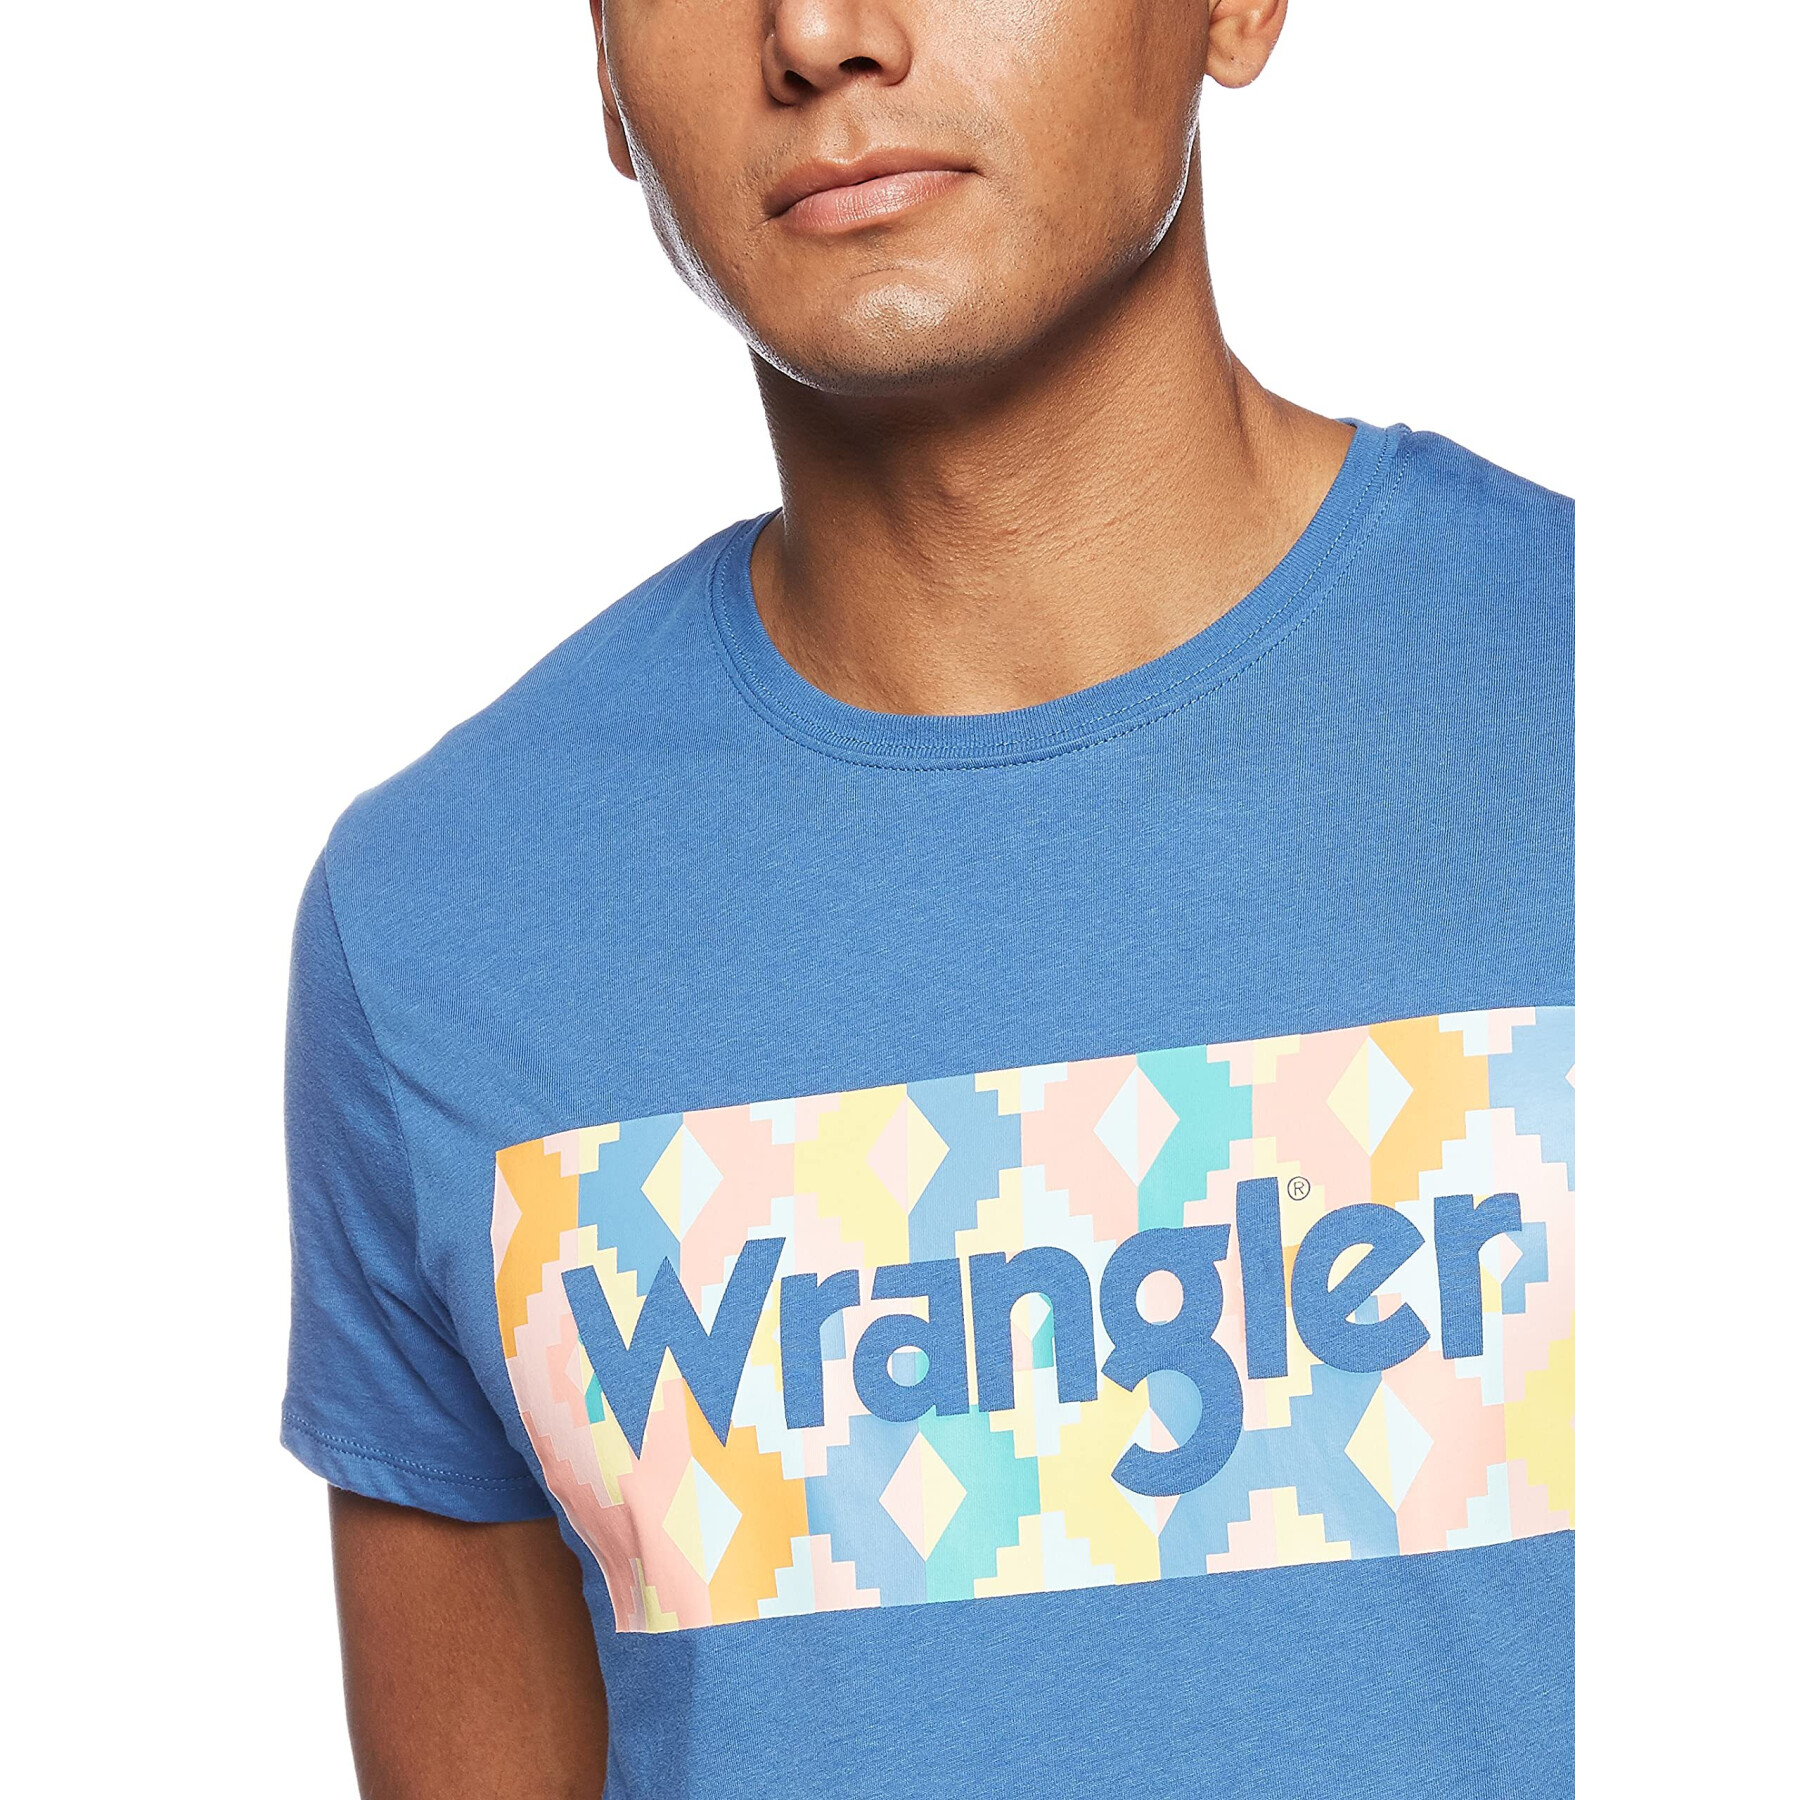 T-shirt Wrangler summer logo